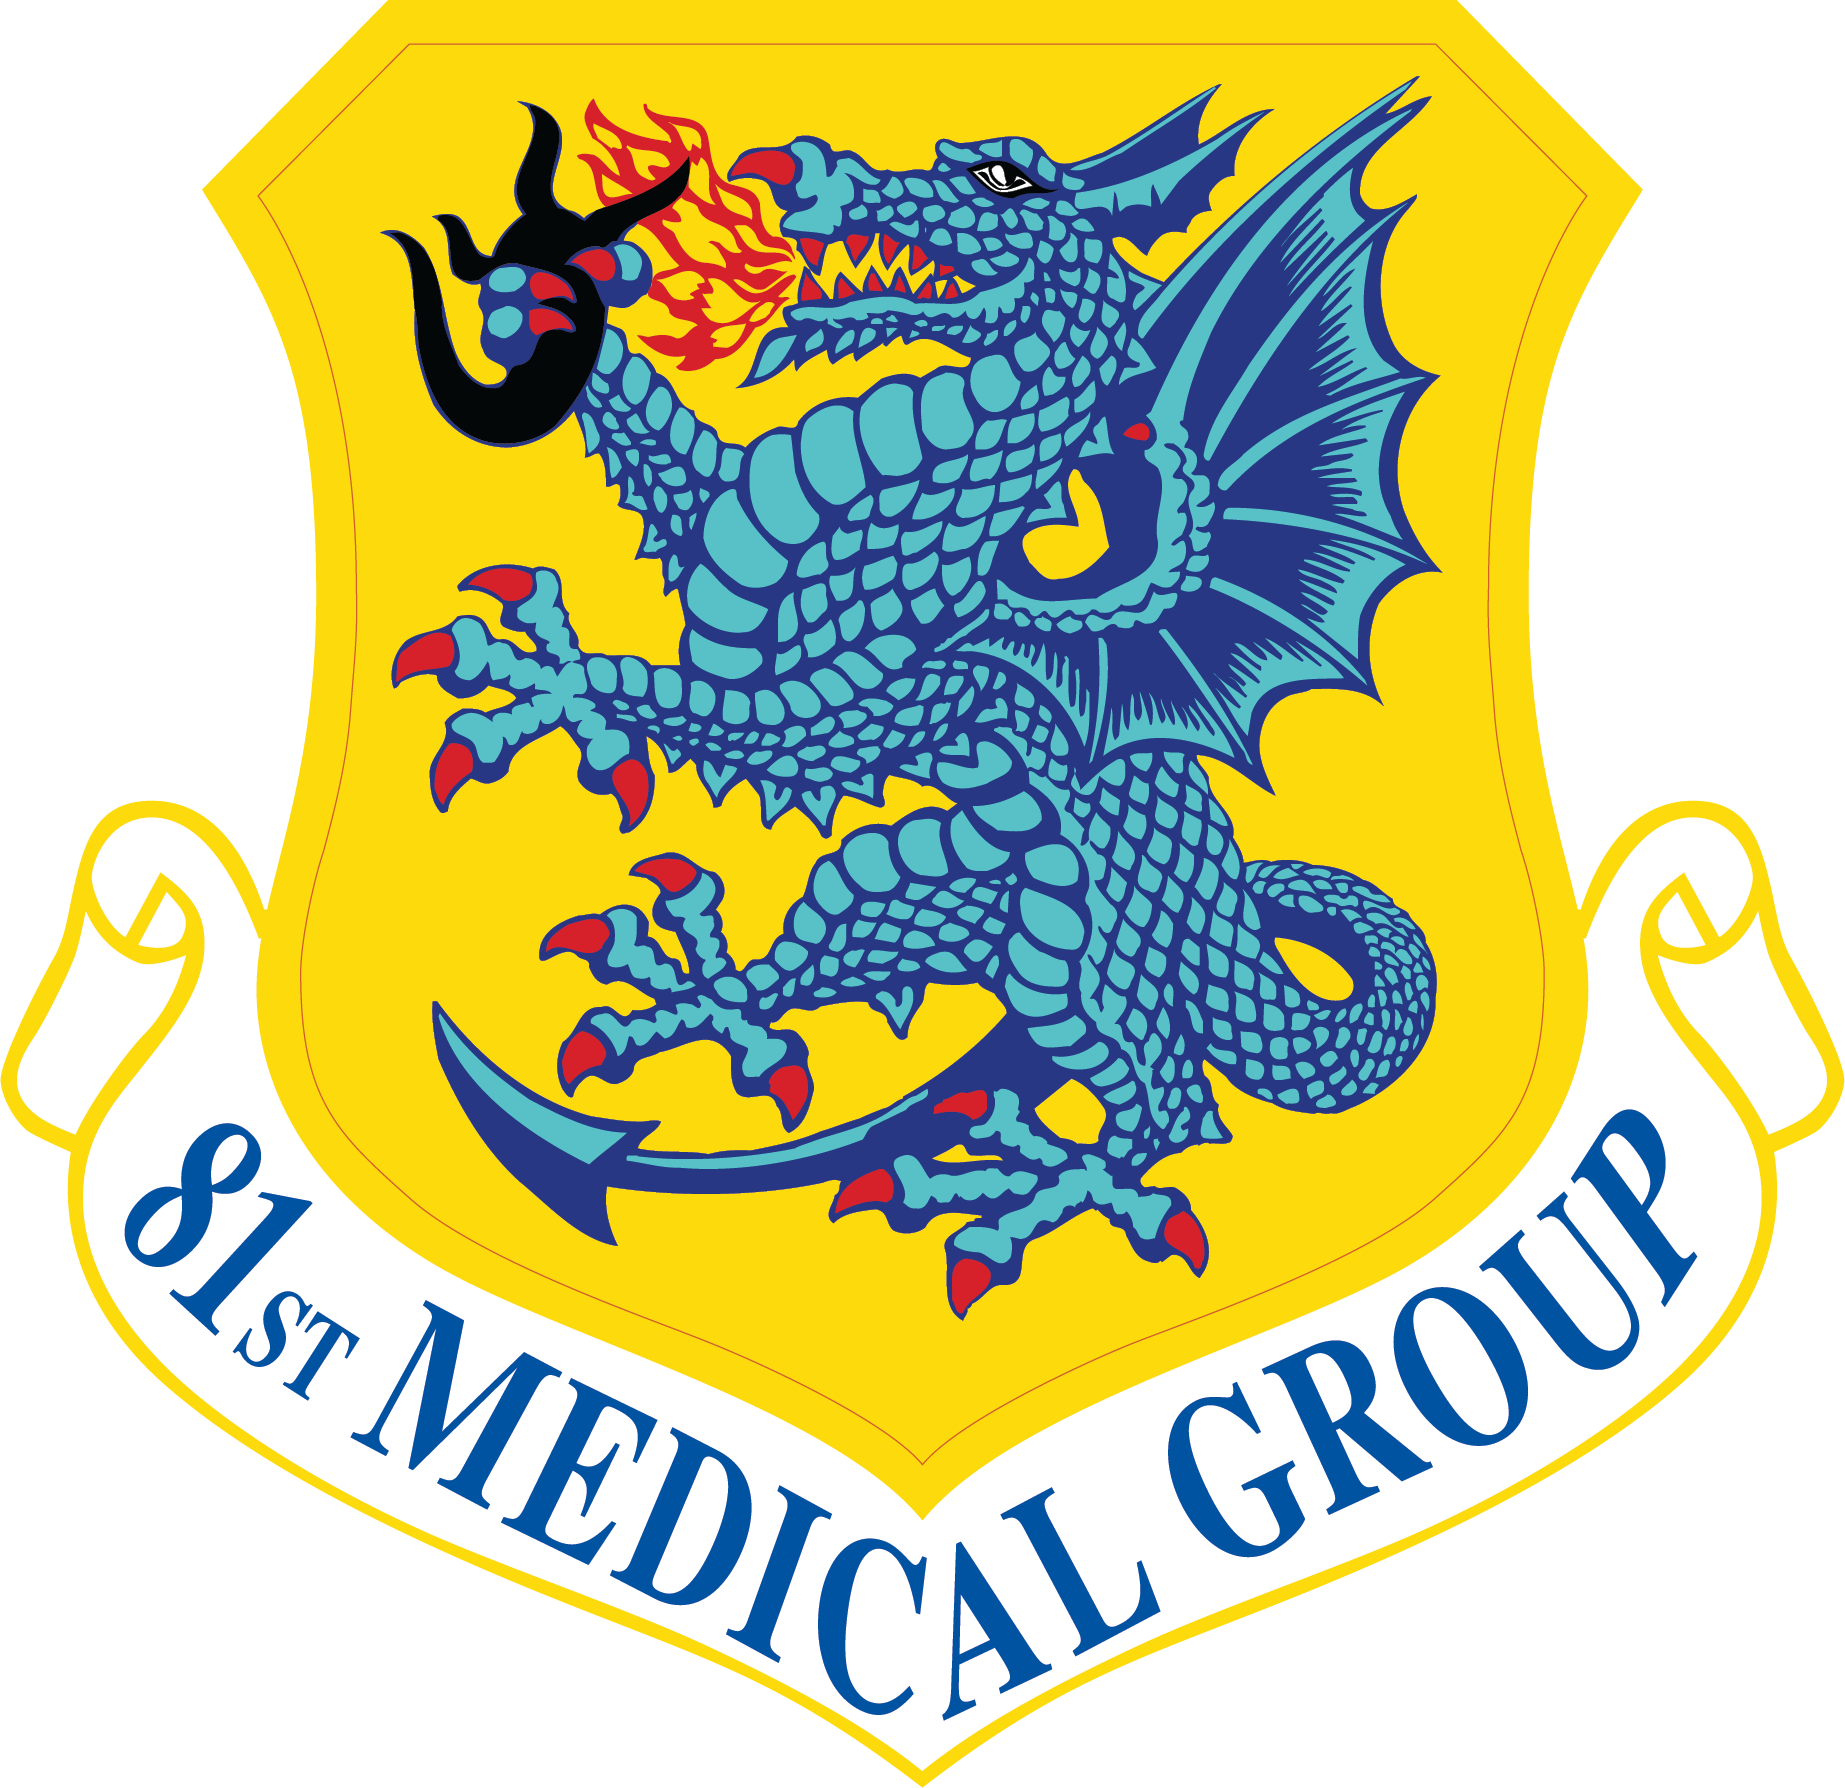 81st Medical Group emblem